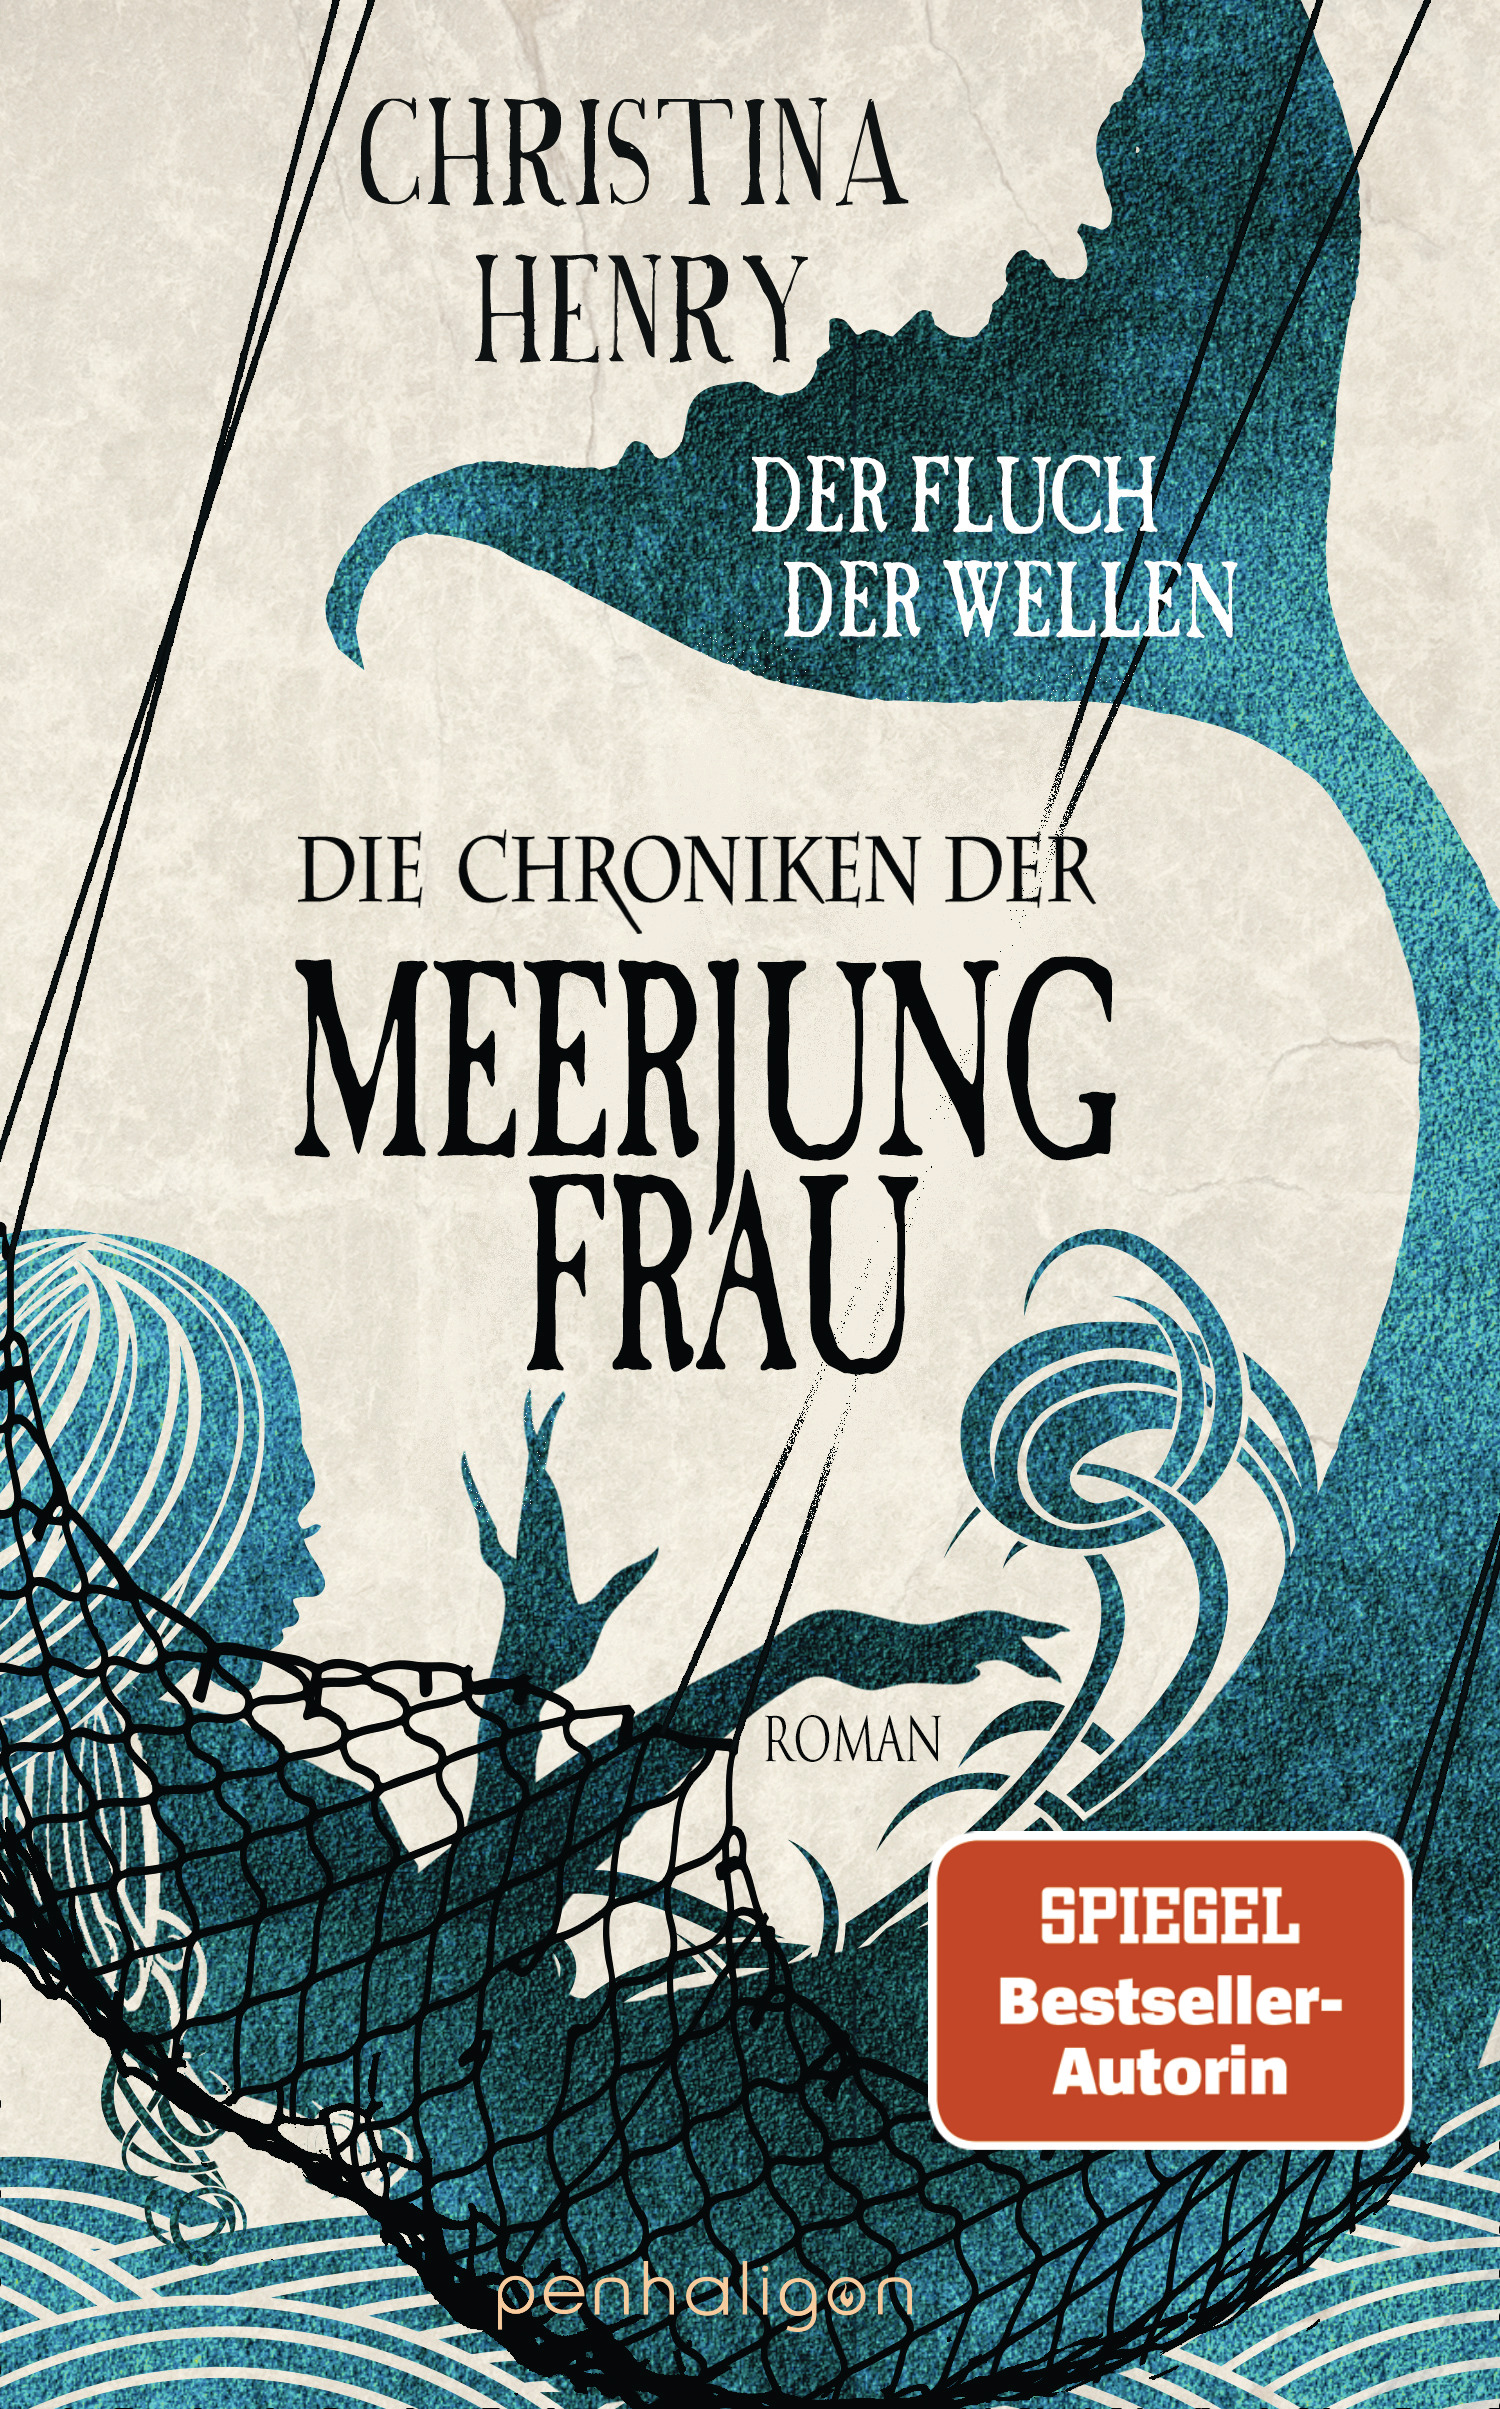 Bücherblog. Rezension. Buchcover. Die Chroniken der Meerjungfrau - Der Fluch der Wellen (Band 5) von Christina Henry. Fantasy. Horror. penhaligon.